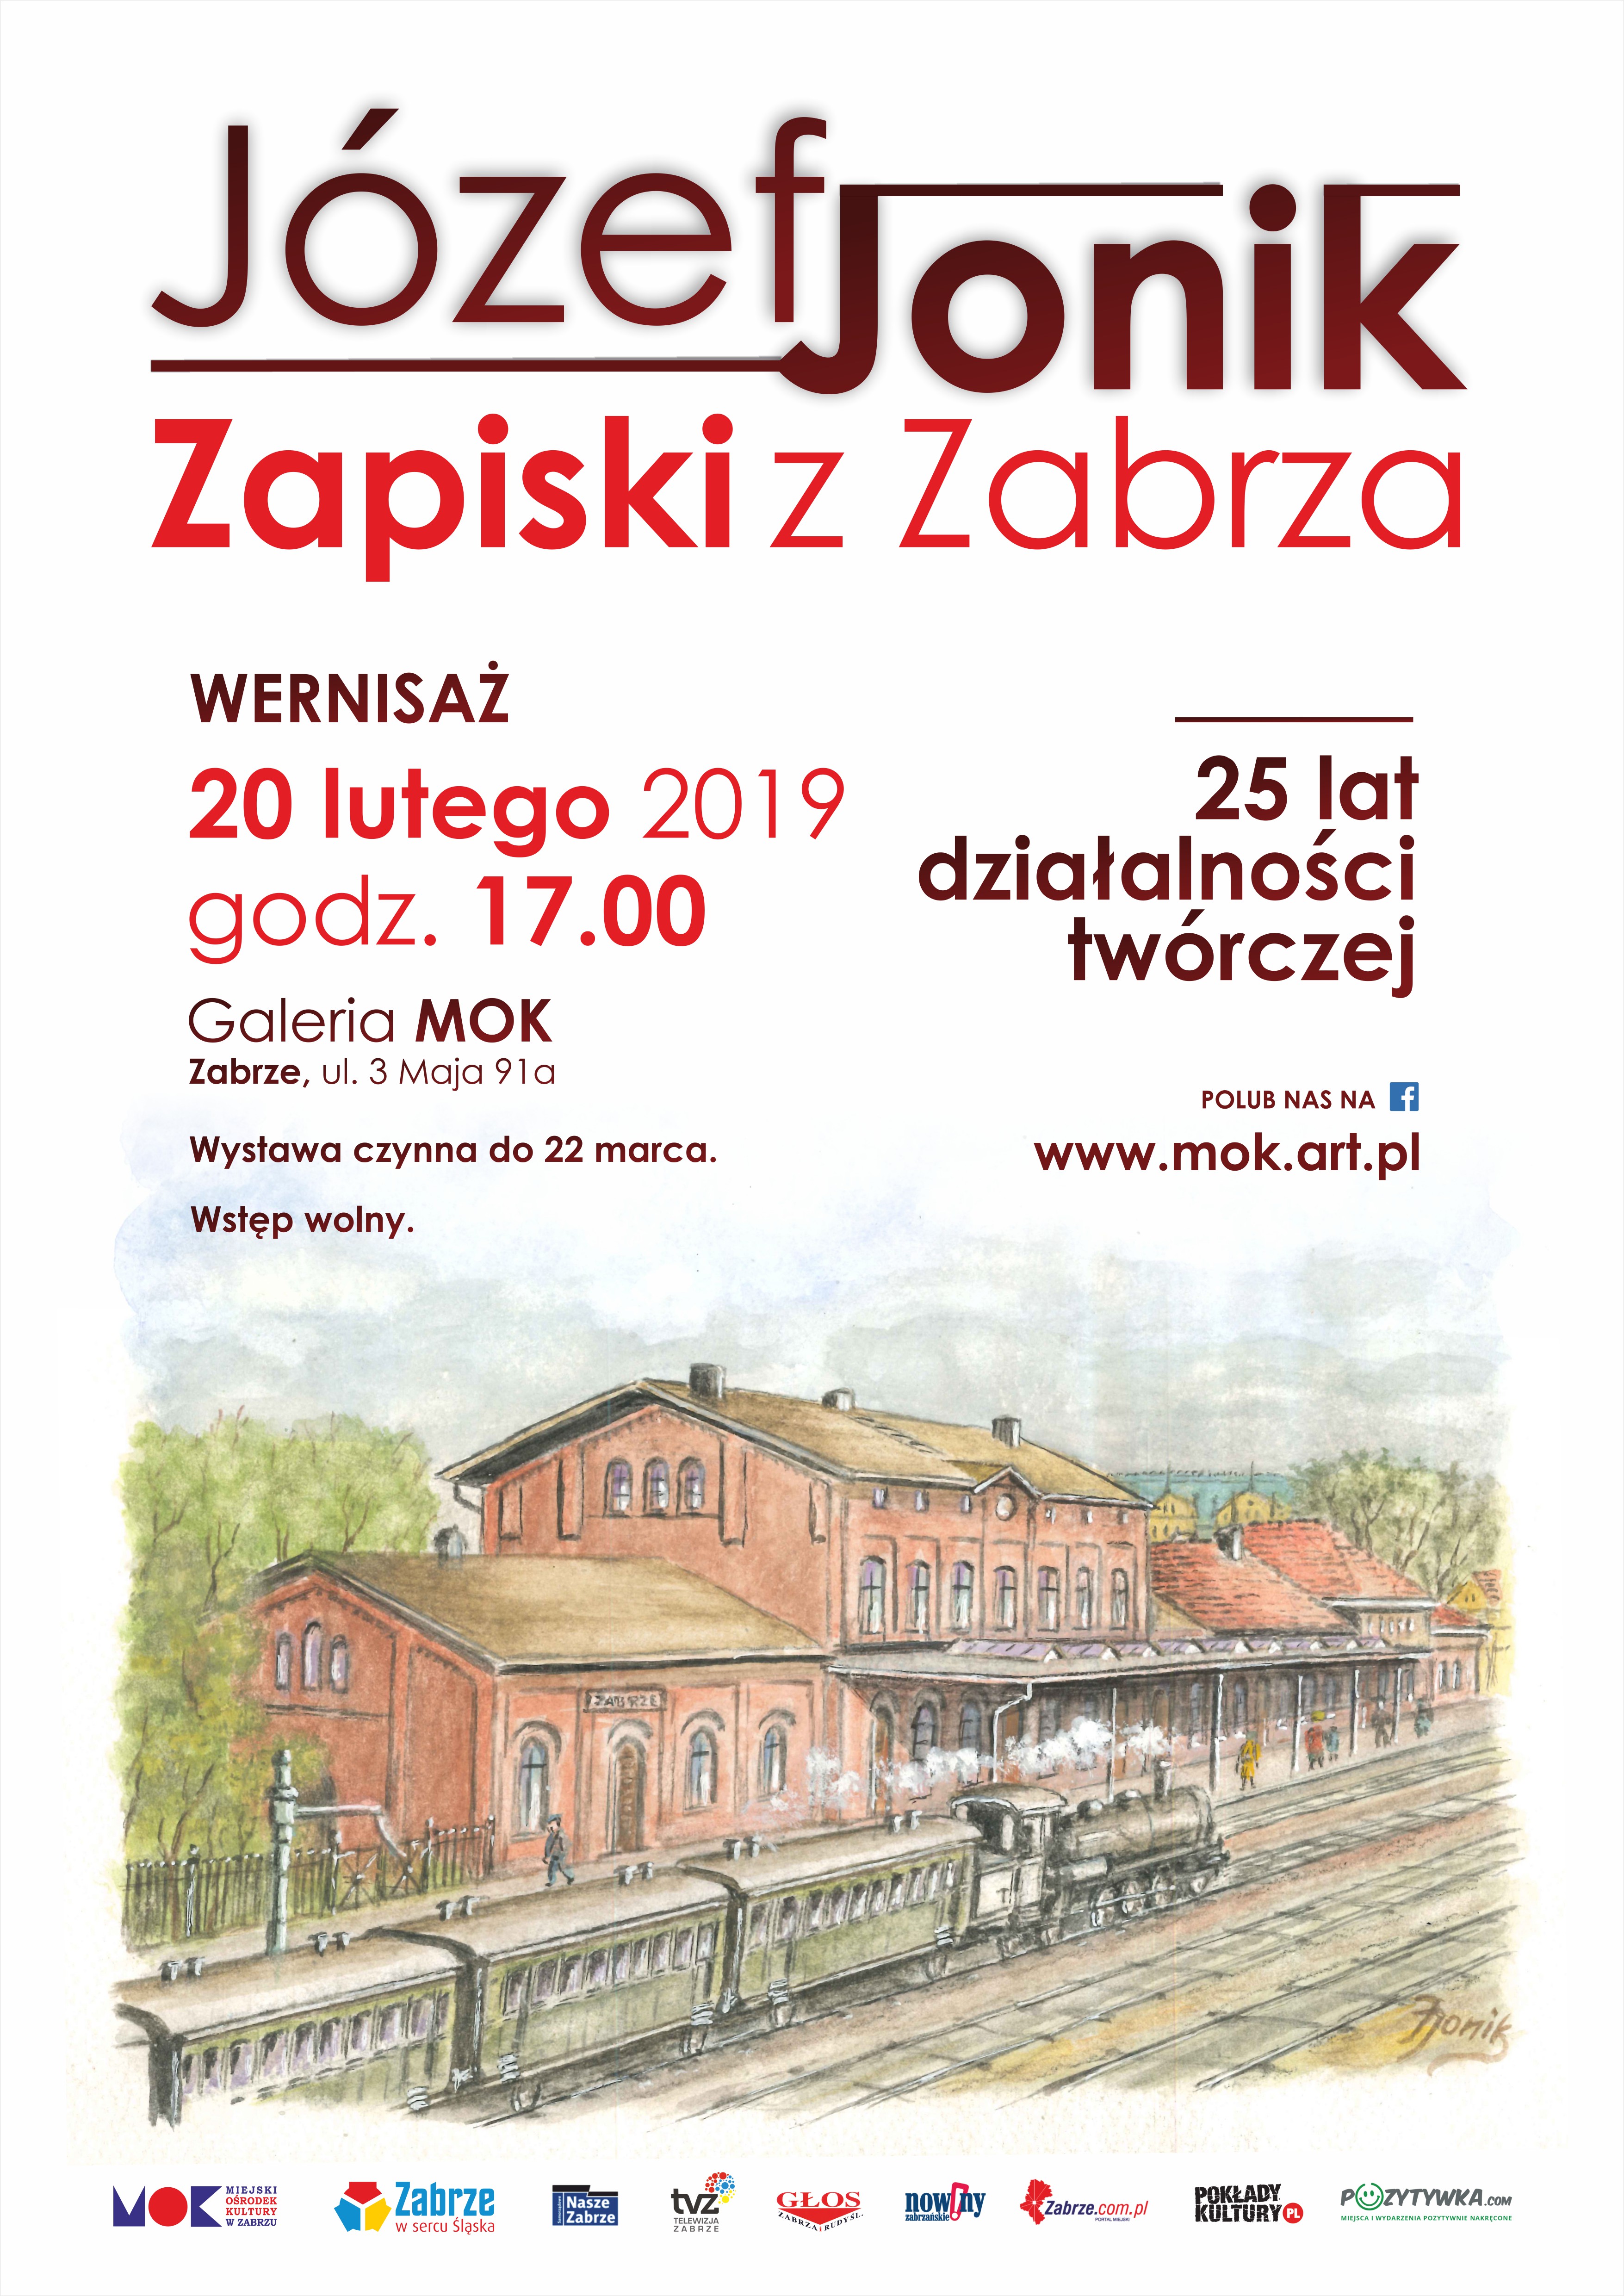 Zapiski z Zabrza - plakat promujący wystawę z okazji 25-lecia działalności twórczej Józefa Jonika